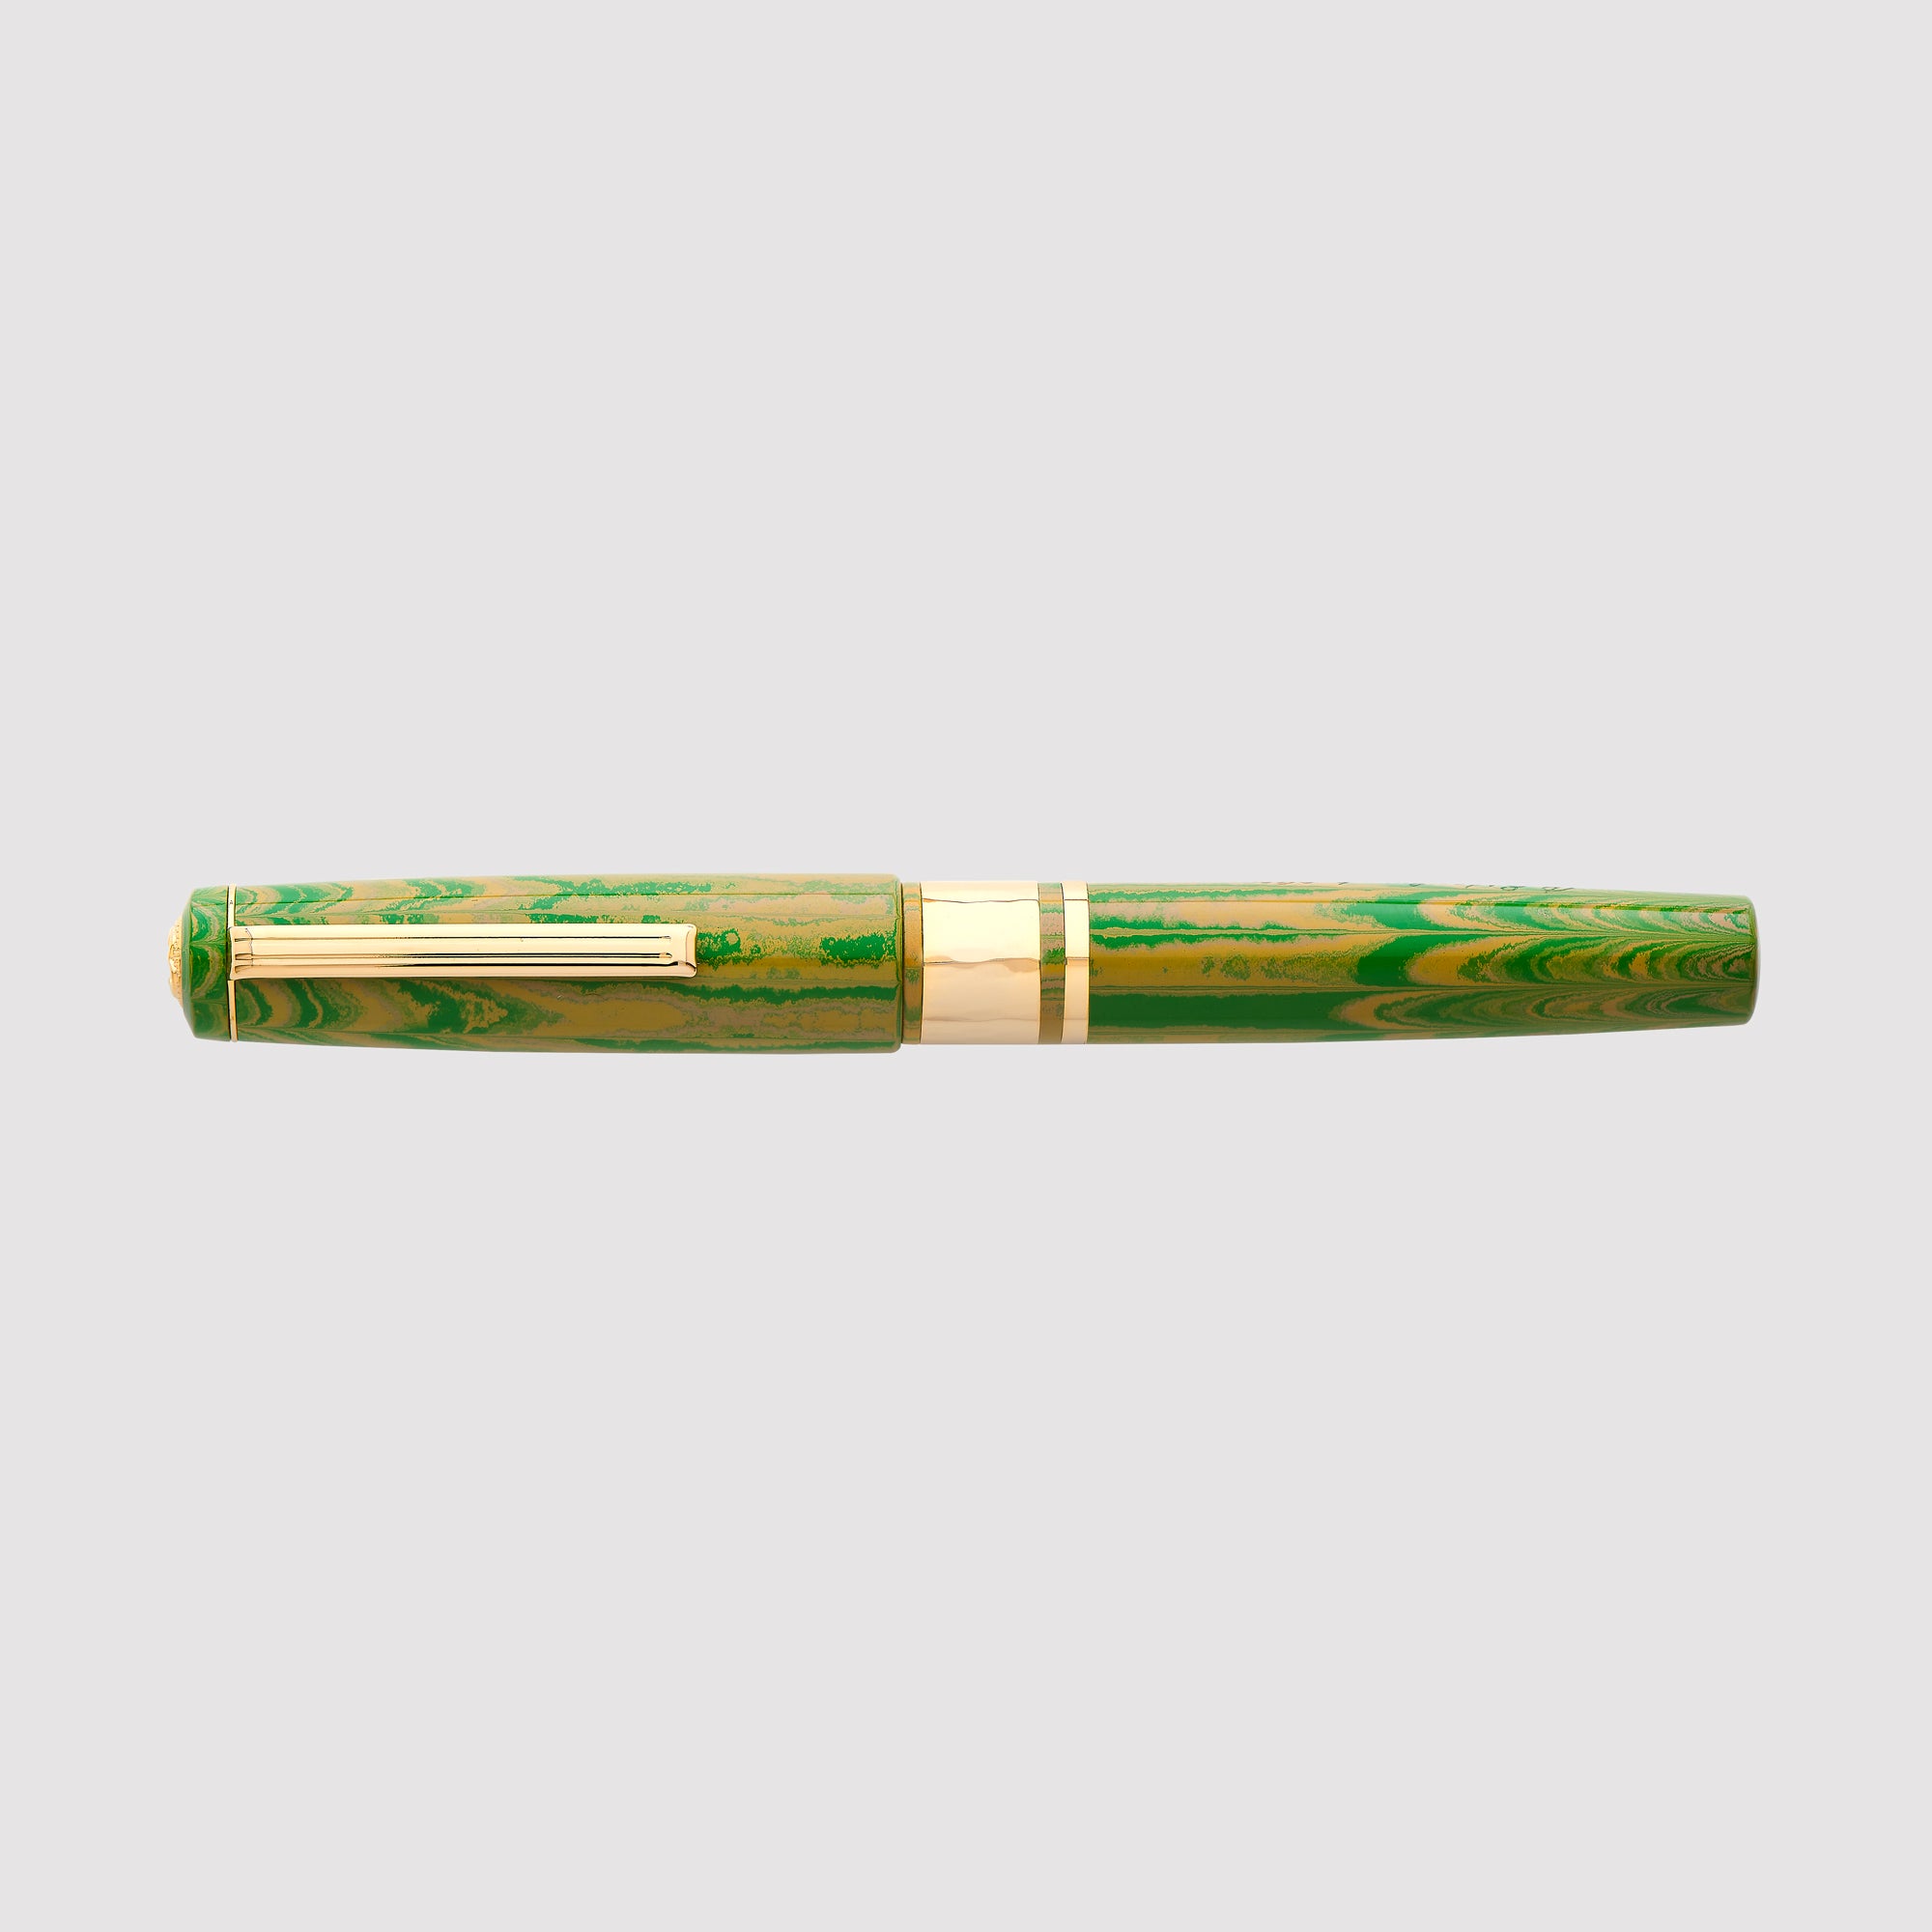 Modèle J Lotus Green Ebonite avec garniture dorée